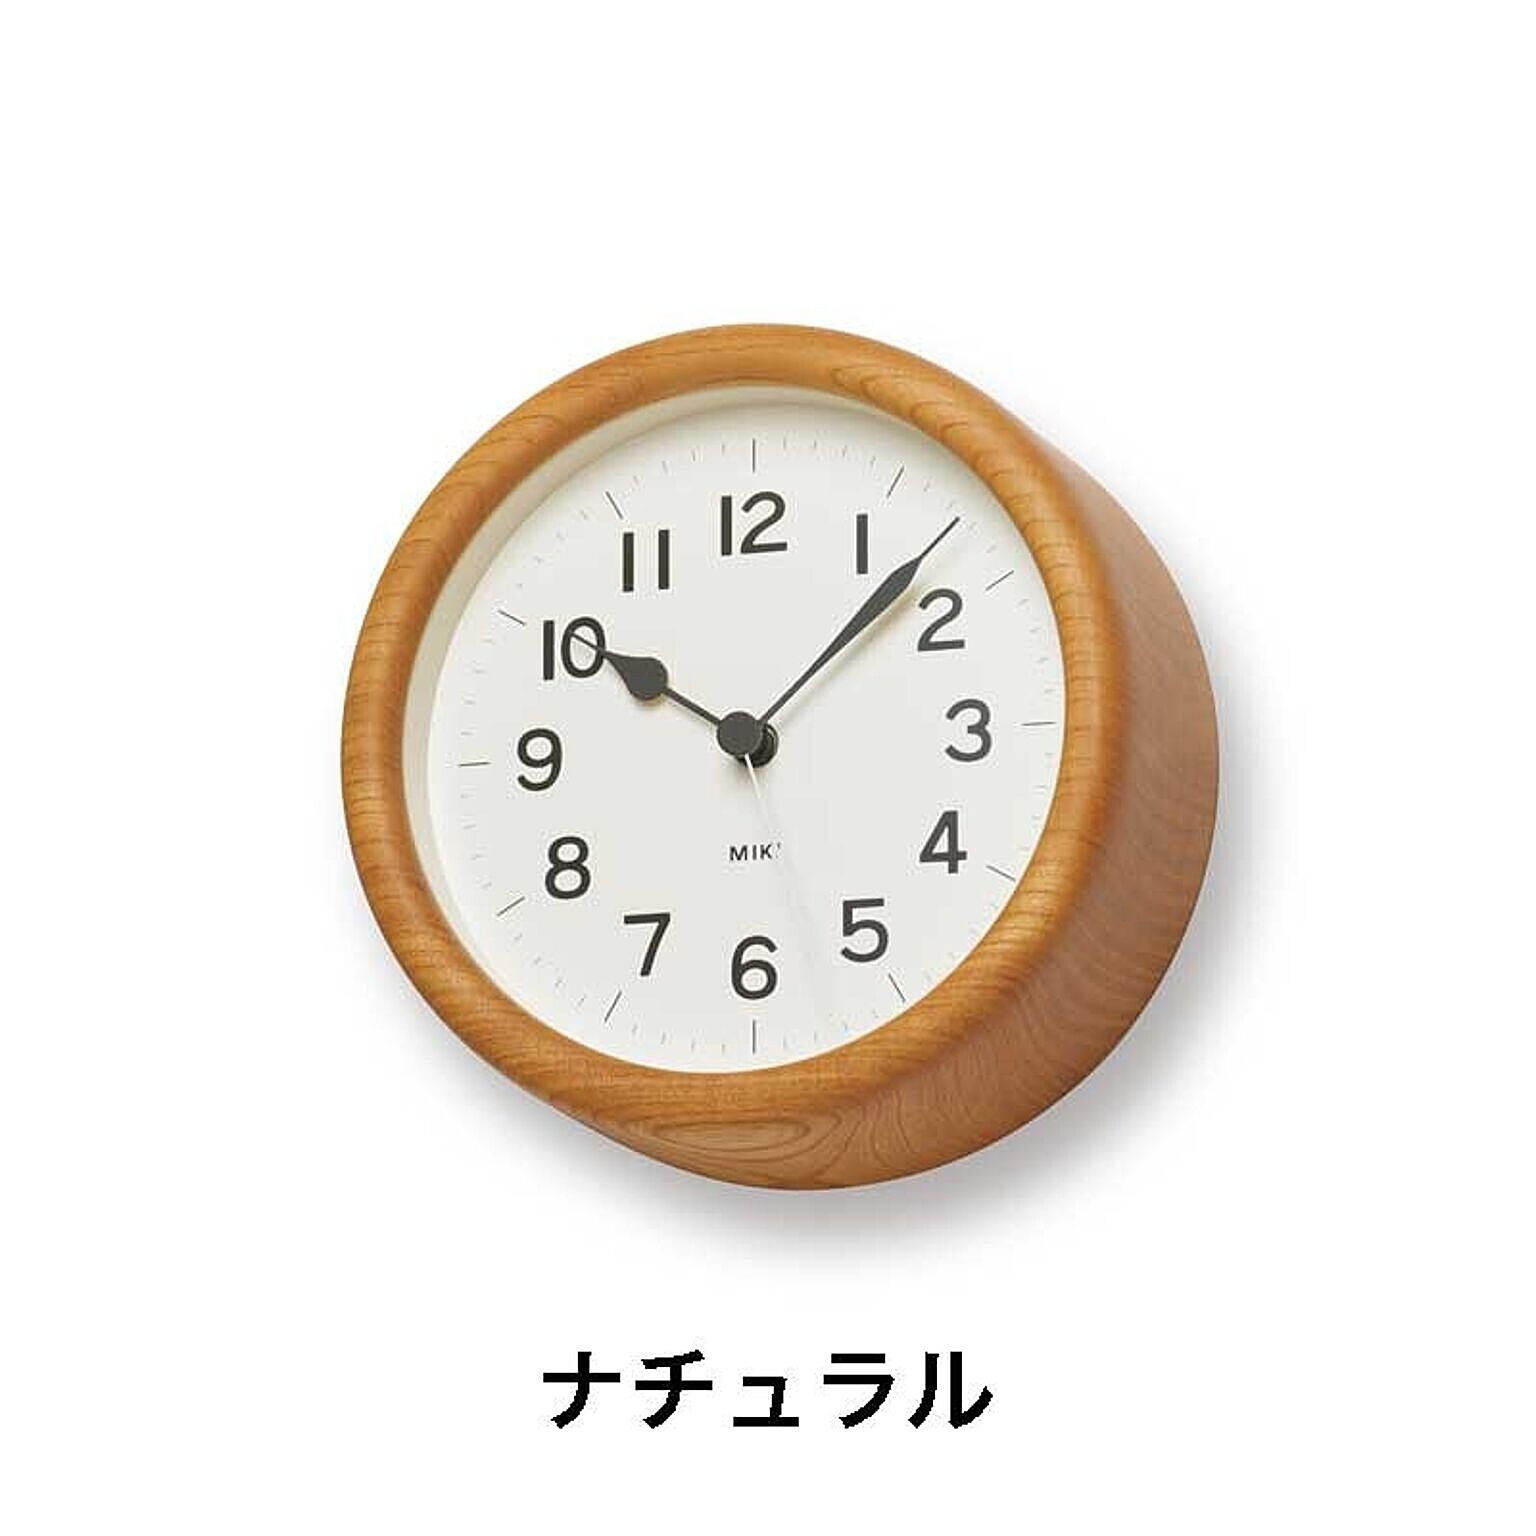 【Lemnos/レムノス】MIKI / ミキ-ケヤキの時計